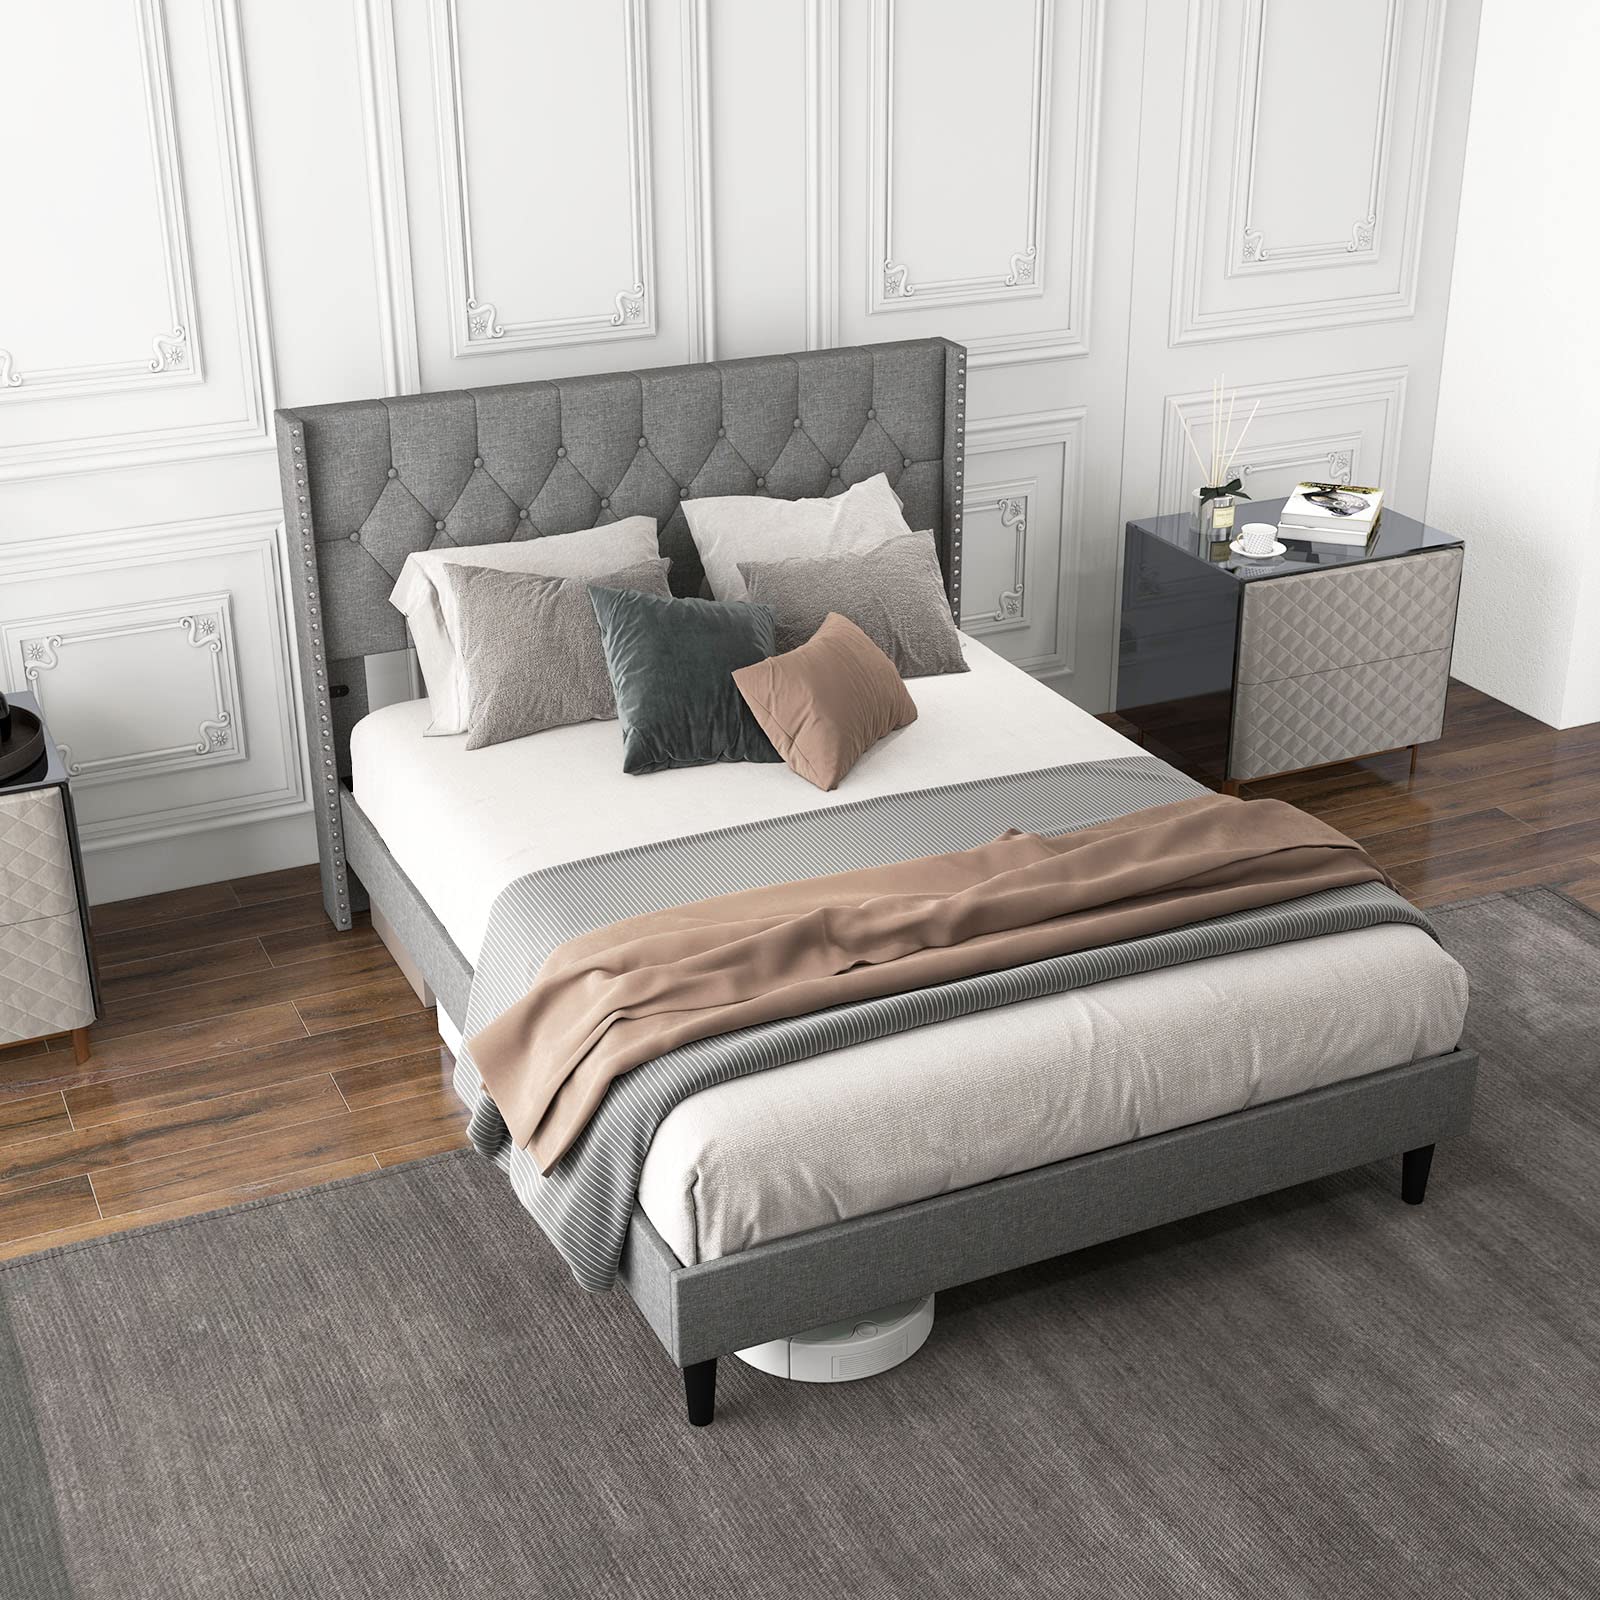 Giantex Full Size Linen Fabric Upholstered Platform Bed Frame